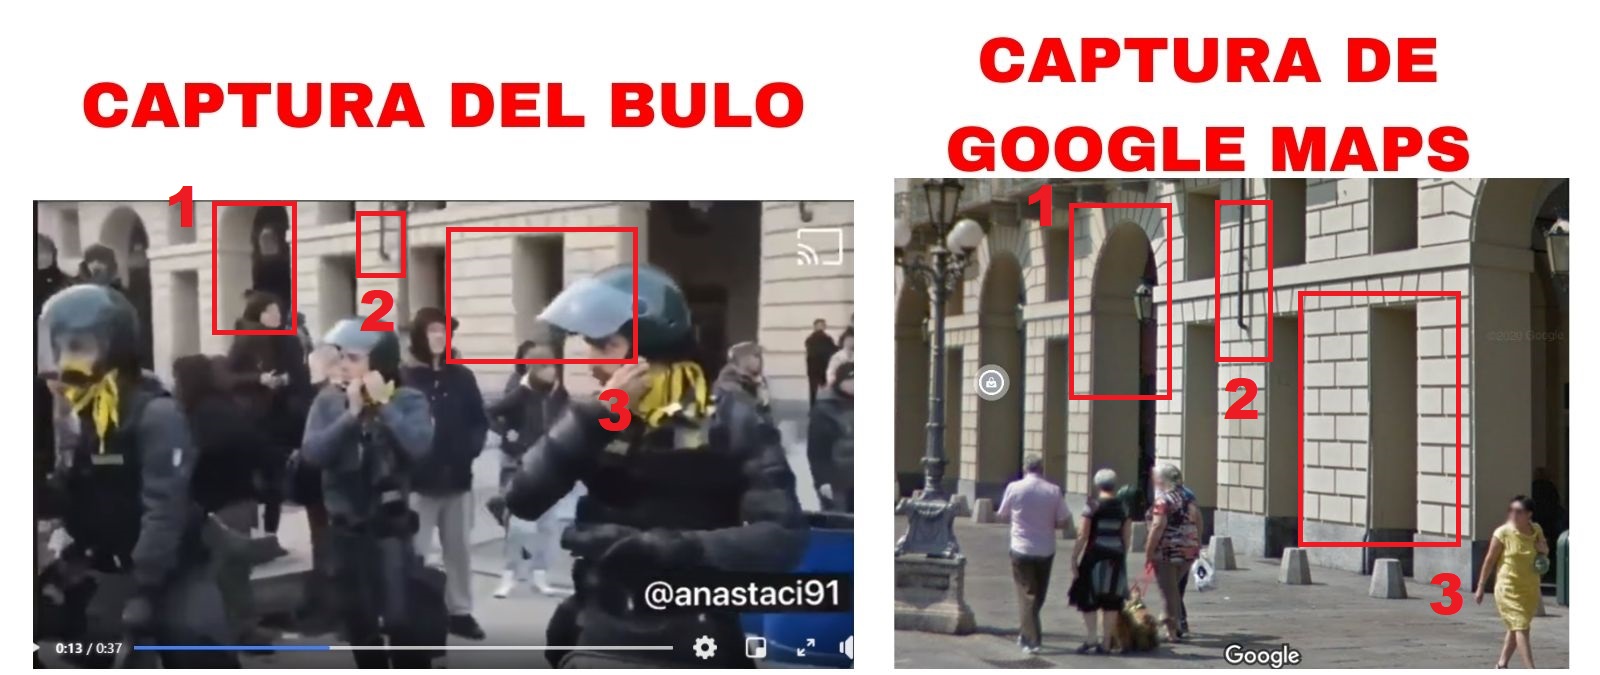 Comparativa entre el bulo que se difunde y la plaza de Turín en la que fue grabado el vídeo.